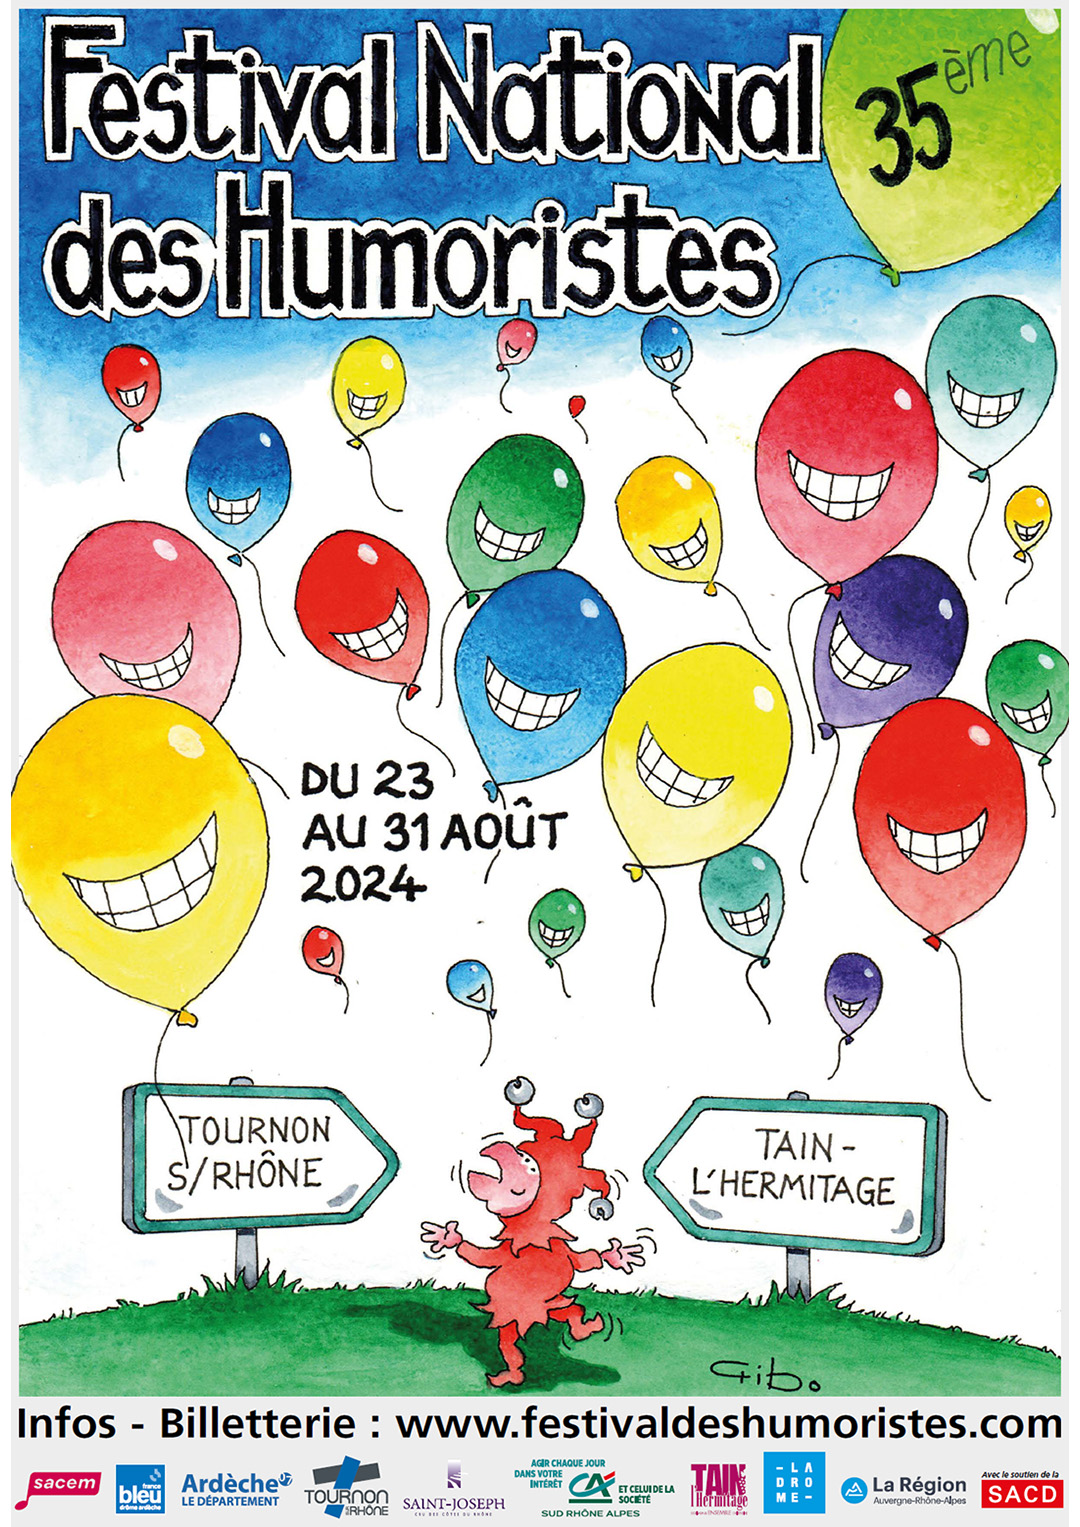 Festival National des Humoristes. Du 23 au 31 août 2024